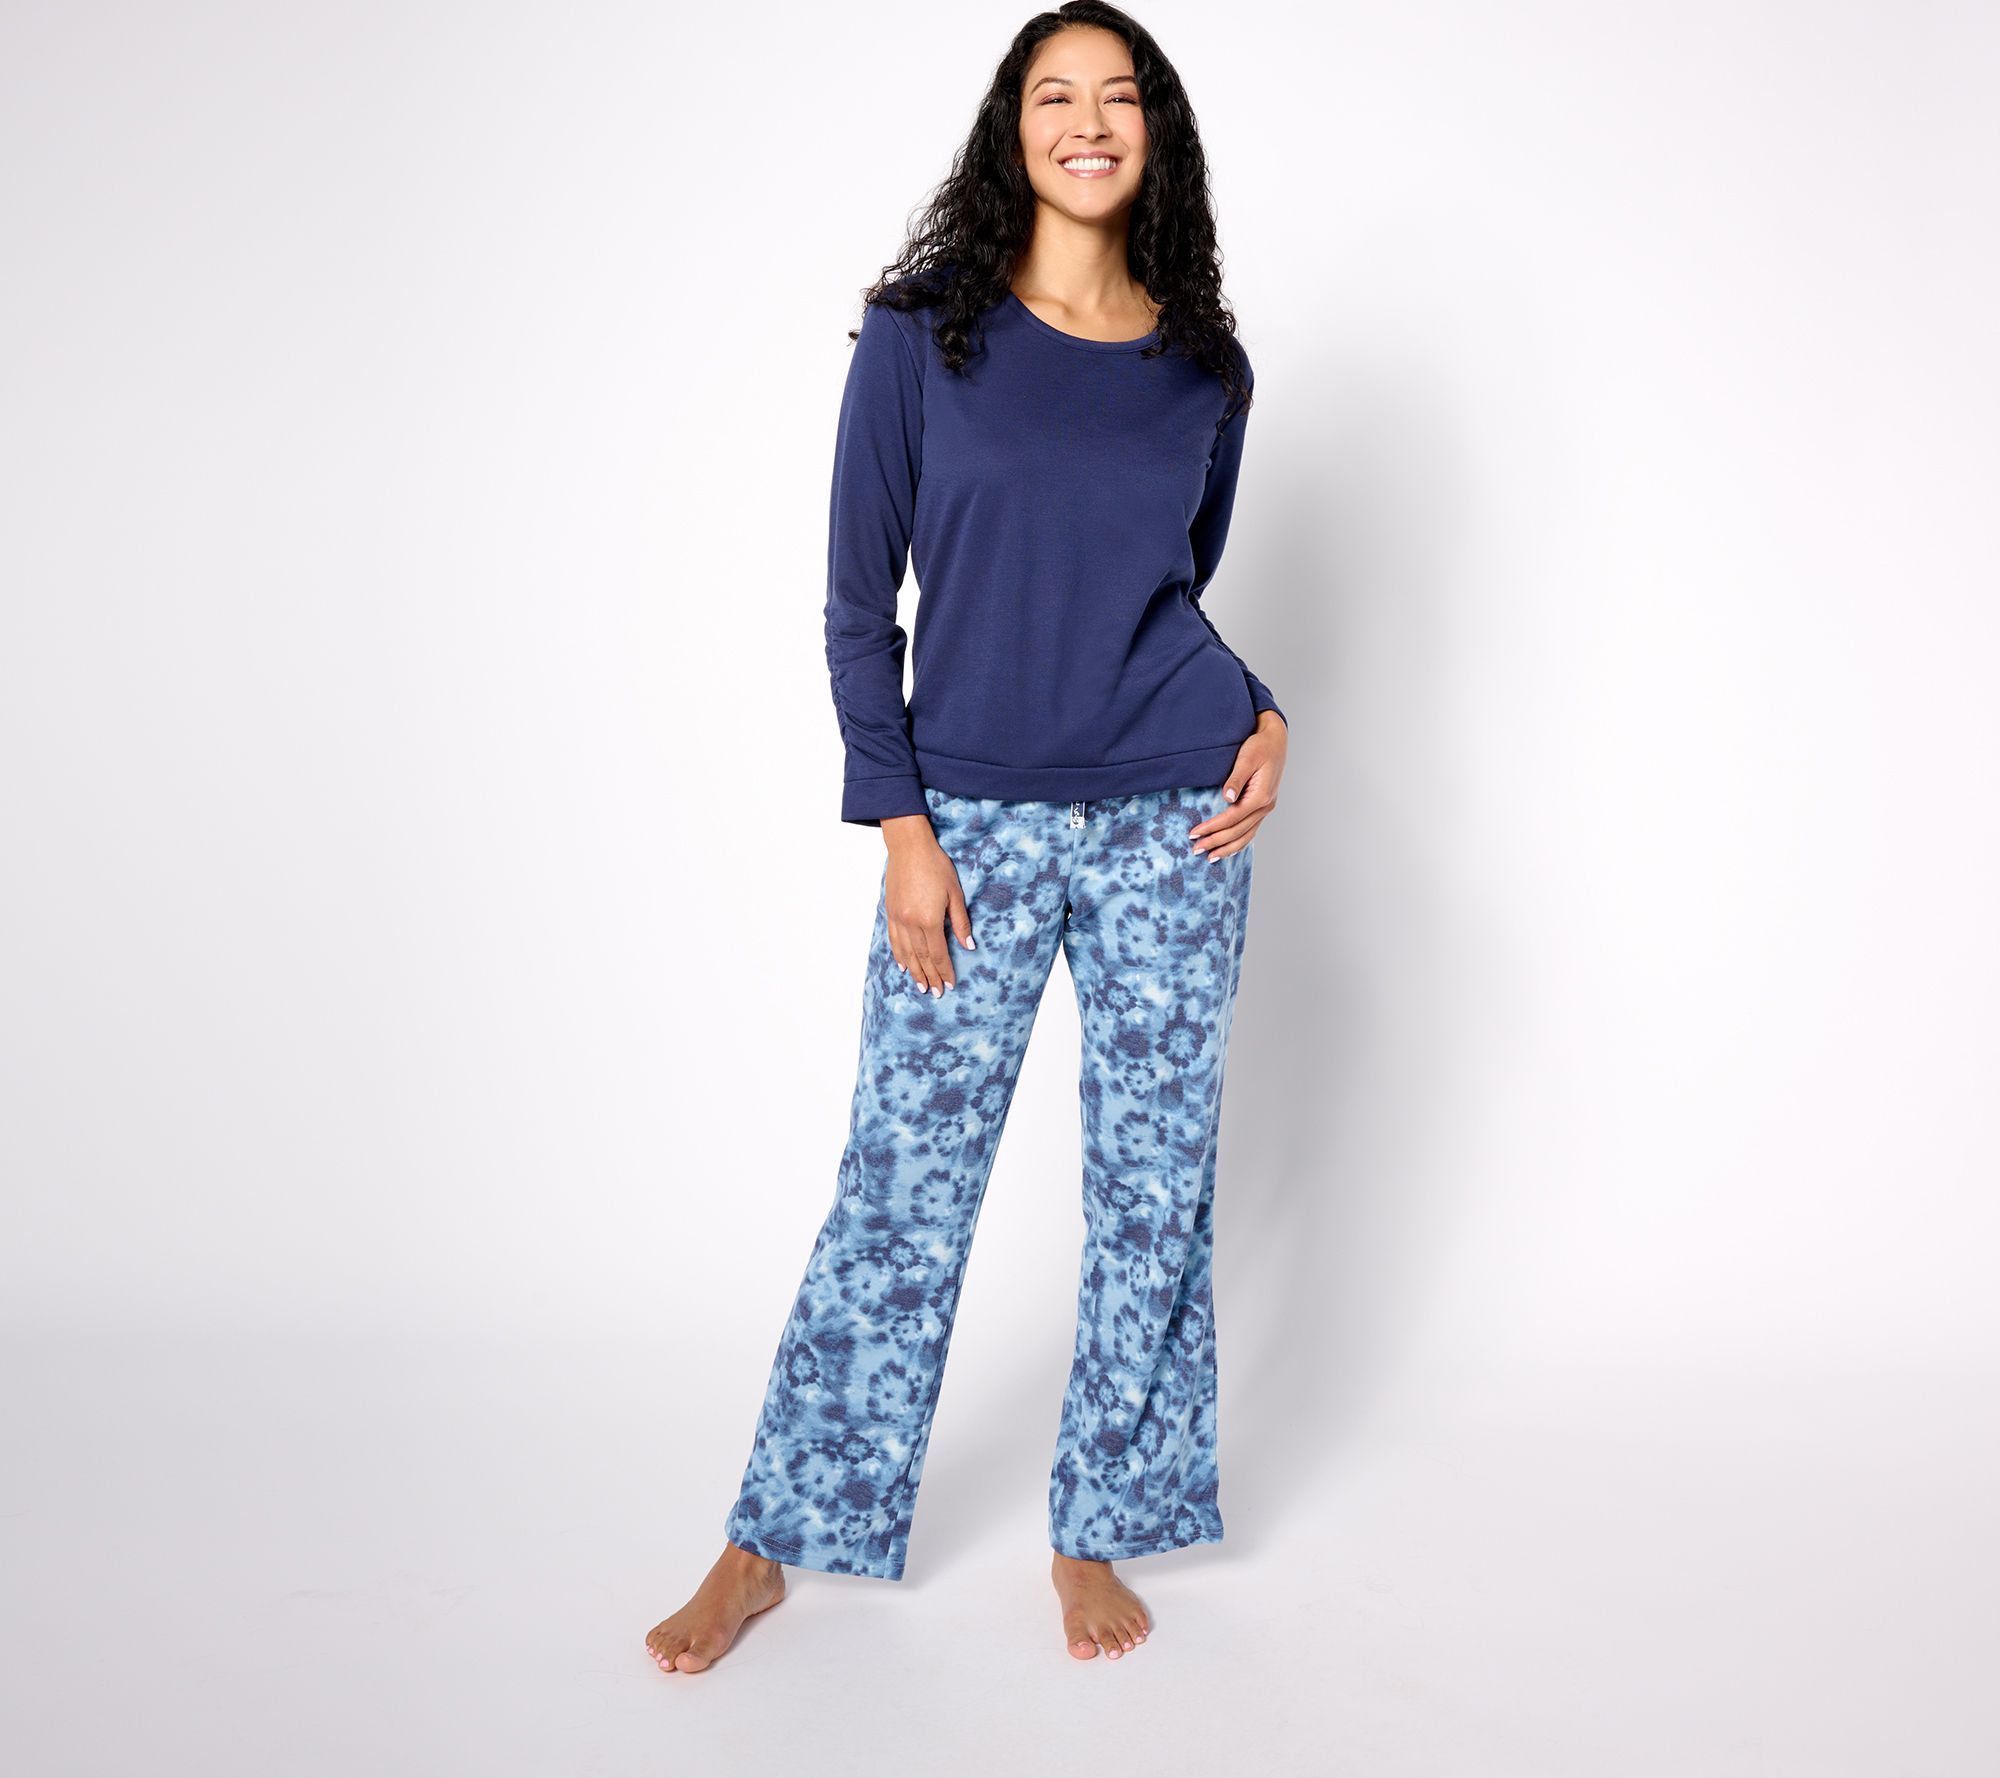 Lv Louis Vuitton pj pajamas pyjama payama pyjamas pjs sleepwear nightwear  satin silk can nego, Women's Fashion, New Undergarments & Loungewear on  Carousell